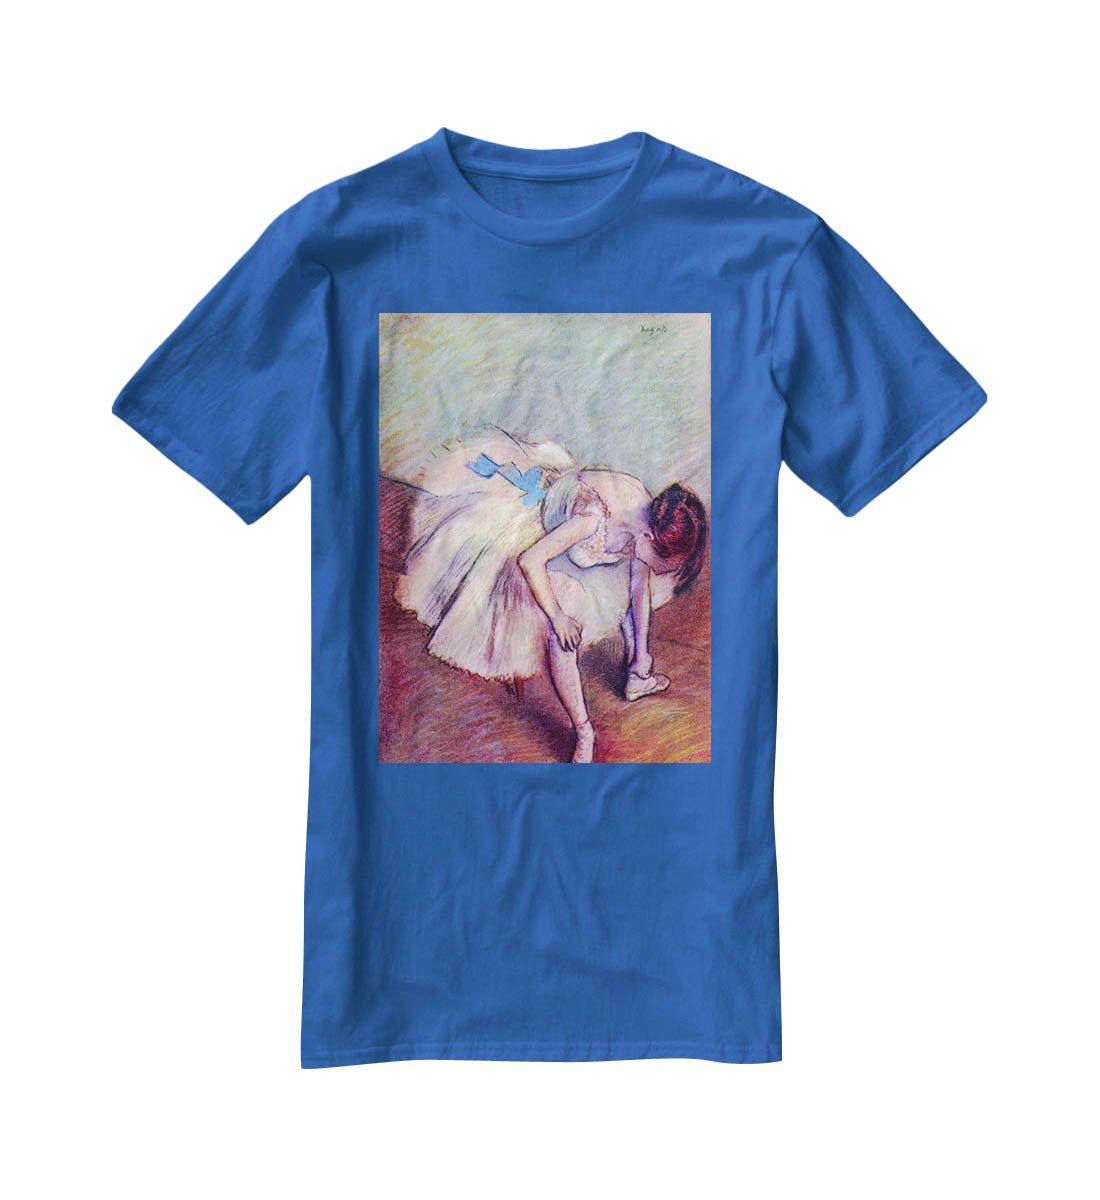 Dancer bent over by Degas T-Shirt - Canvas Art Rocks - 2